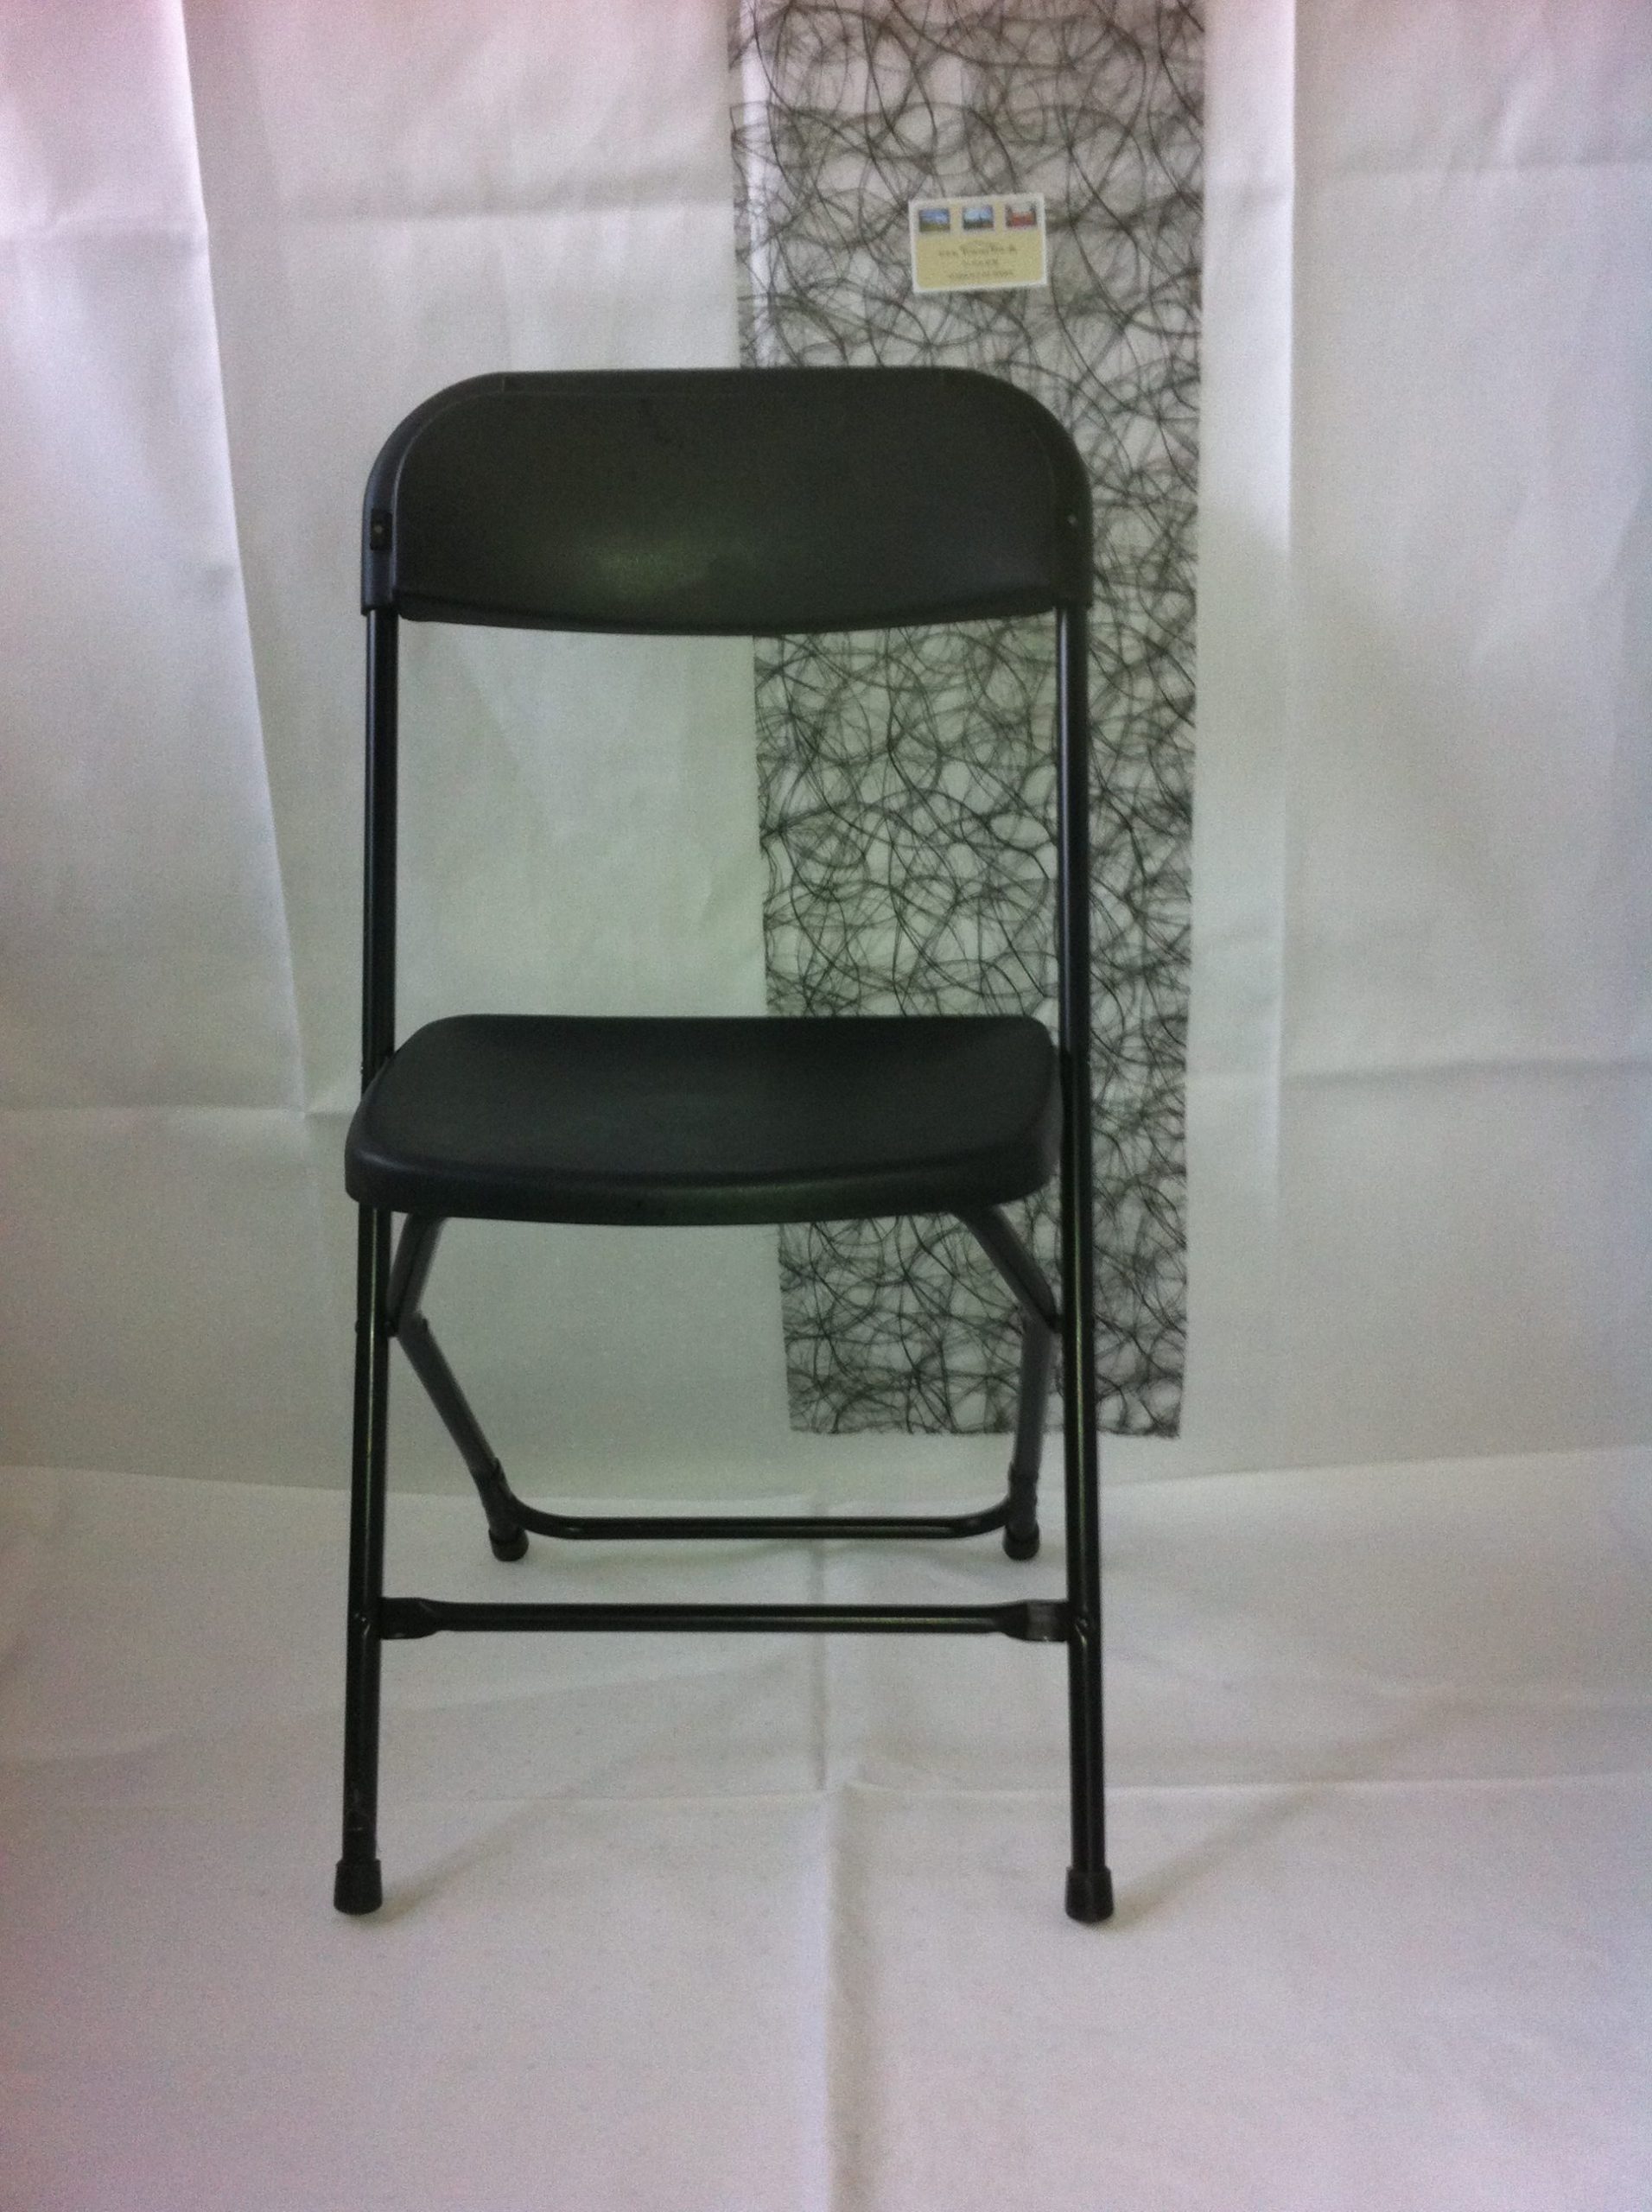 Klapstole sorte er en sort stol, der kan foldes sammen og slås ud. Farven er sort og der er et ryglæn.